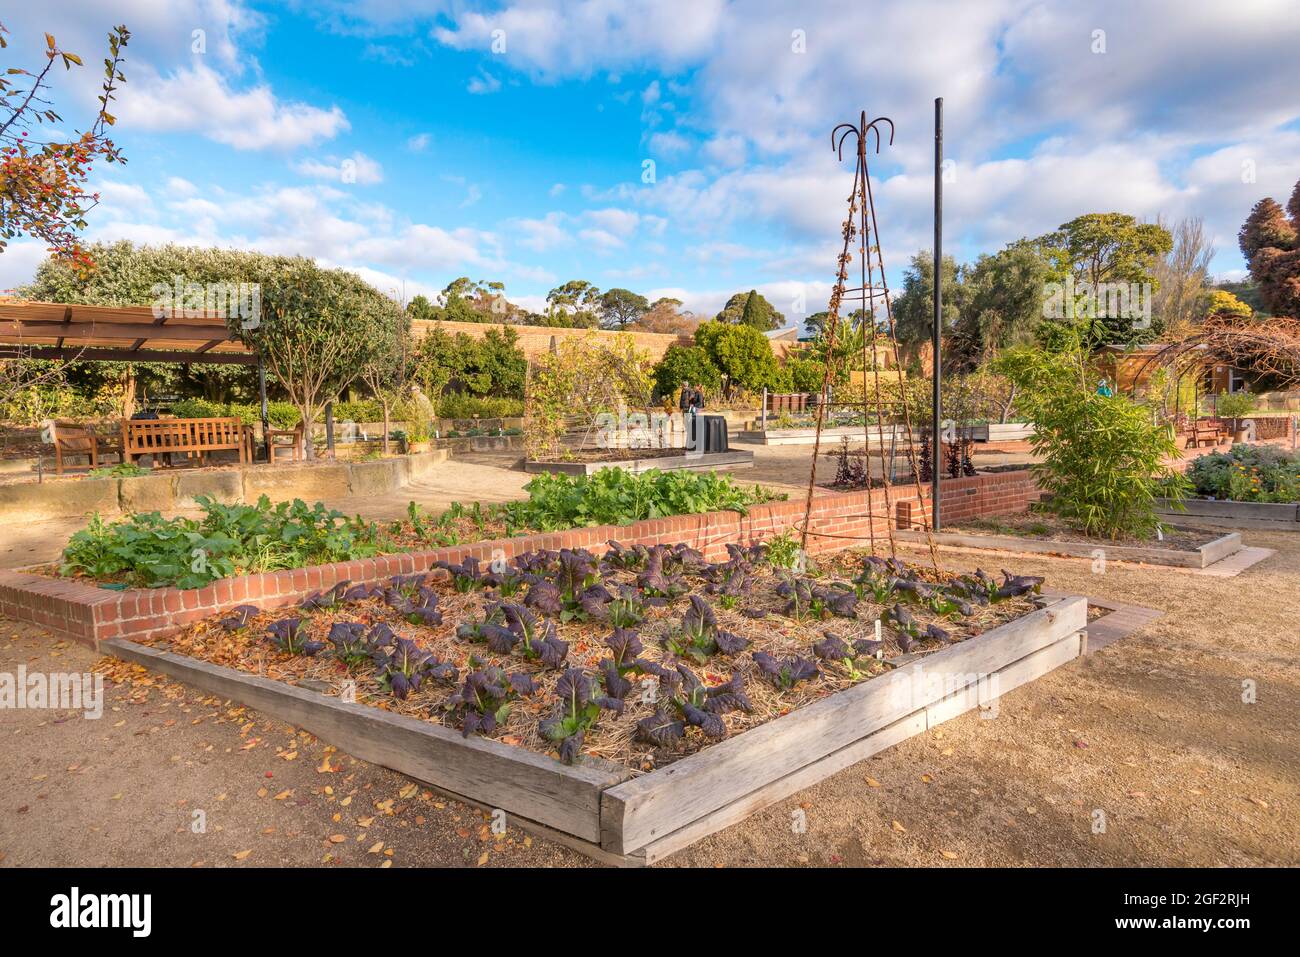 Célèbre pour son émission télévisée Gardening Australia, le potager Patch dans les jardins botaniques de Hobart soutient également des œuvres caritatives Banque D'Images